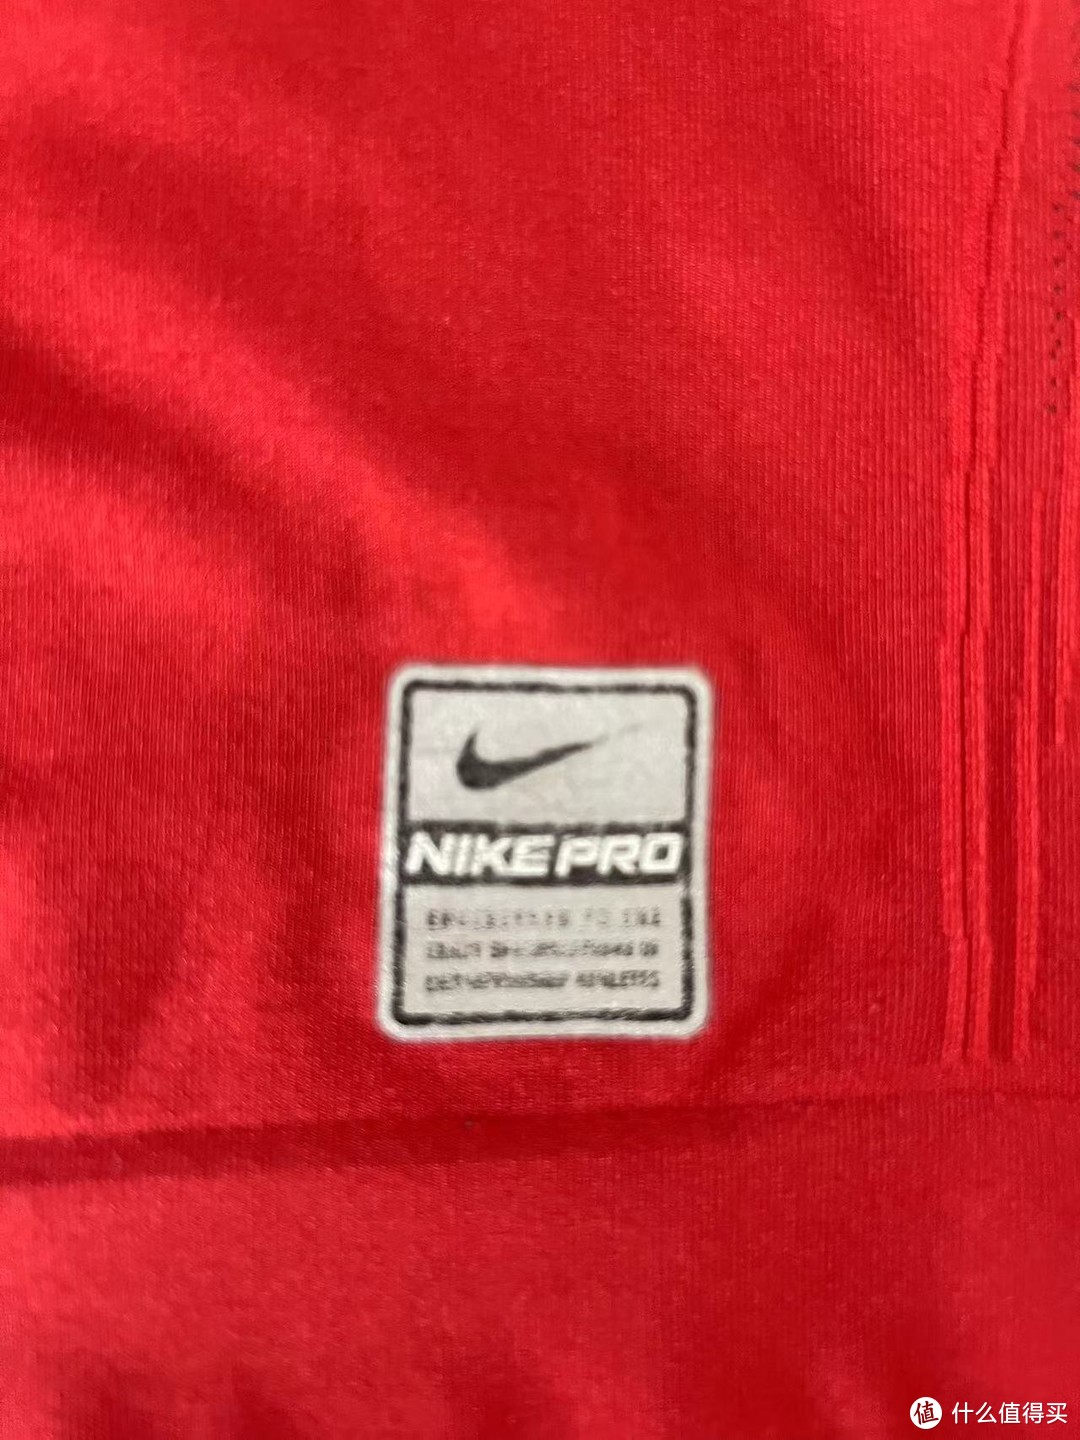 已经十分斑驳的NIKE PRO系列标，这个是当年对标adidas formotion系列提供给专业运动员的装备系列，当然现在也下放了